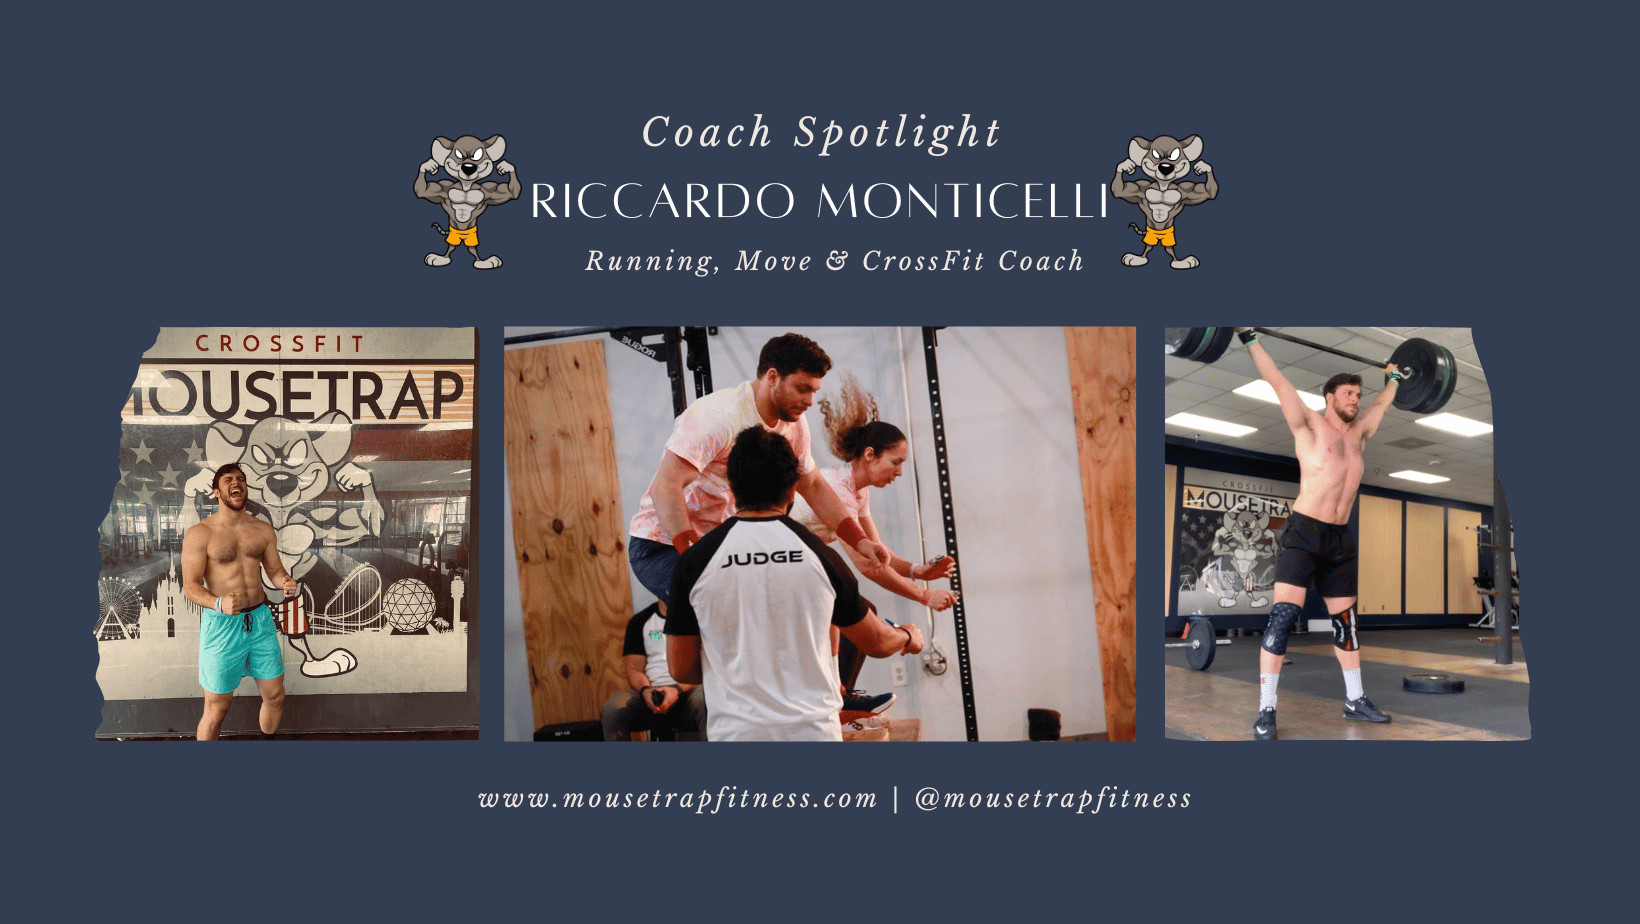 Coach Riccardo's Coaches Spotlight